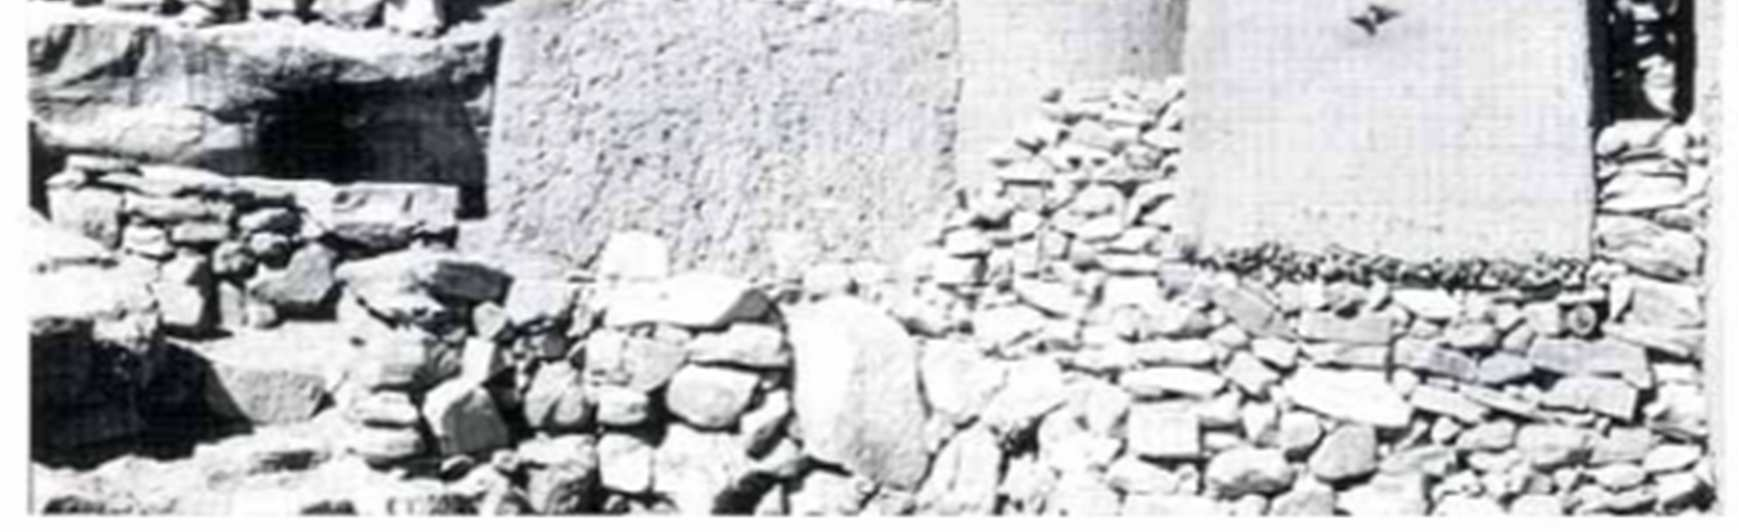 Obrázek 39: Nájemní činžovní římský dům (insula) - Na svahu Kapitolu. (1. stol. př. Kr.) 125 Obrázek 40: Vesnice Banani, provincie Dogon ve státě Mali v západní Africe.